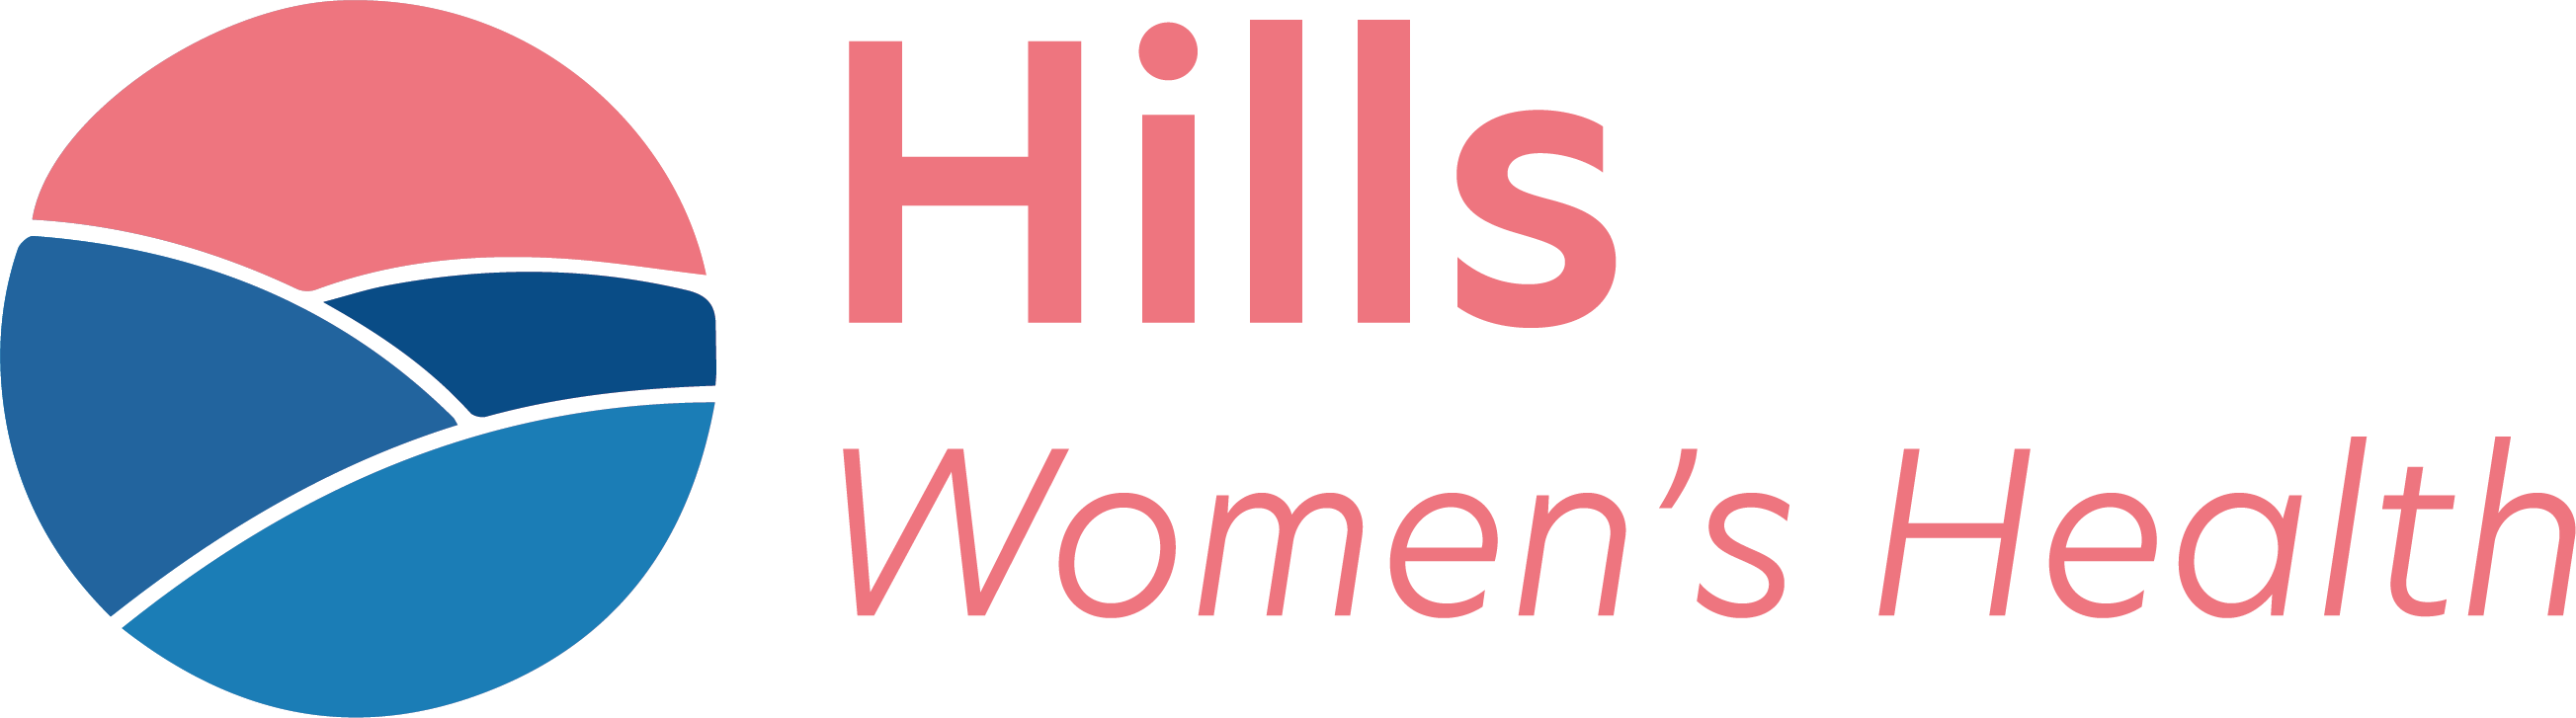 Hills Women's Health